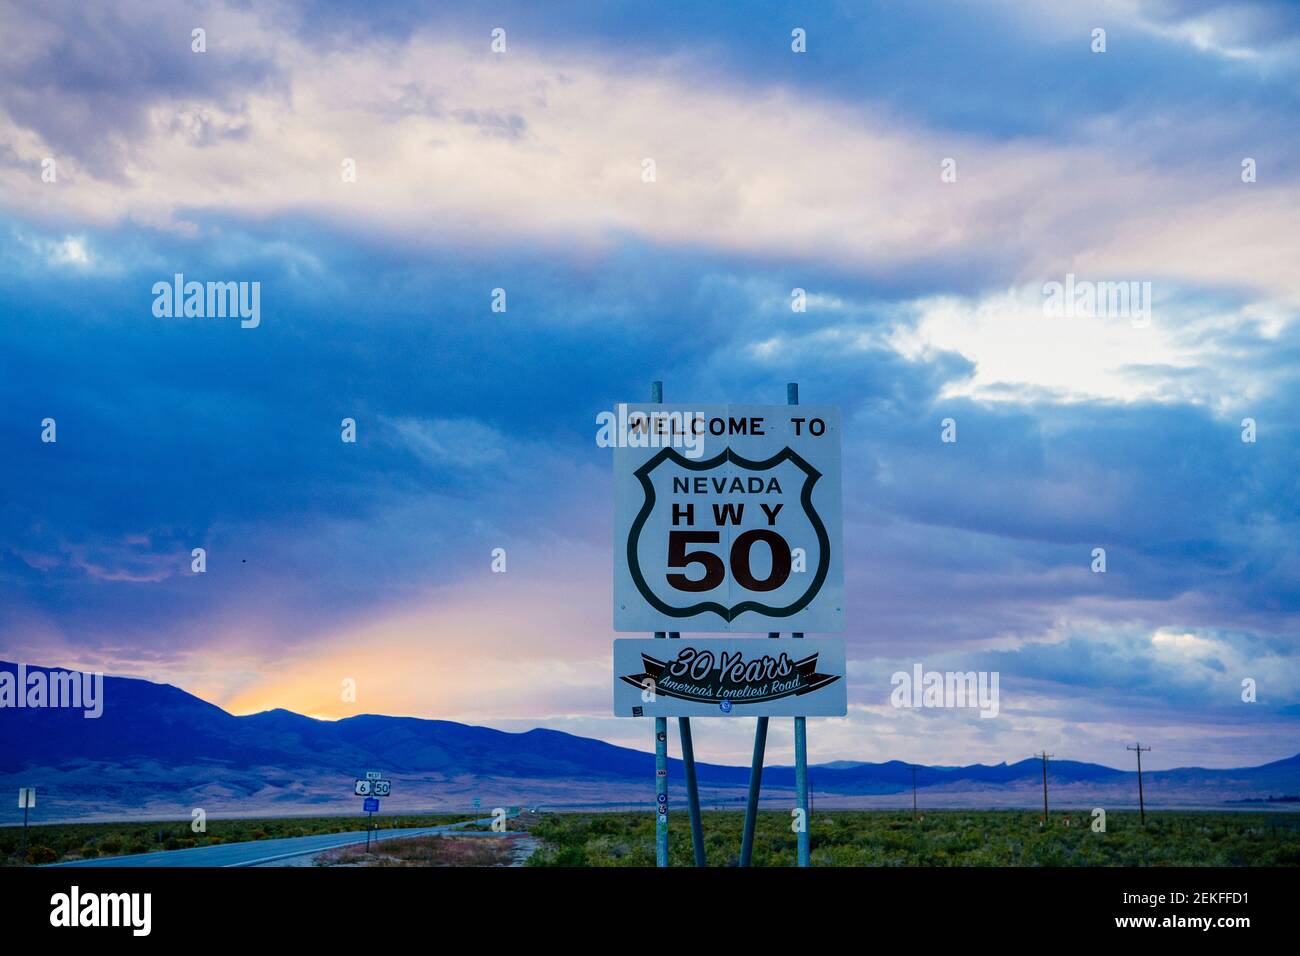 Bienvenue au panneau de la route HWY 50 au coucher du soleil, parc national de Great Basin, Nevada, États-Unis Banque D'Images